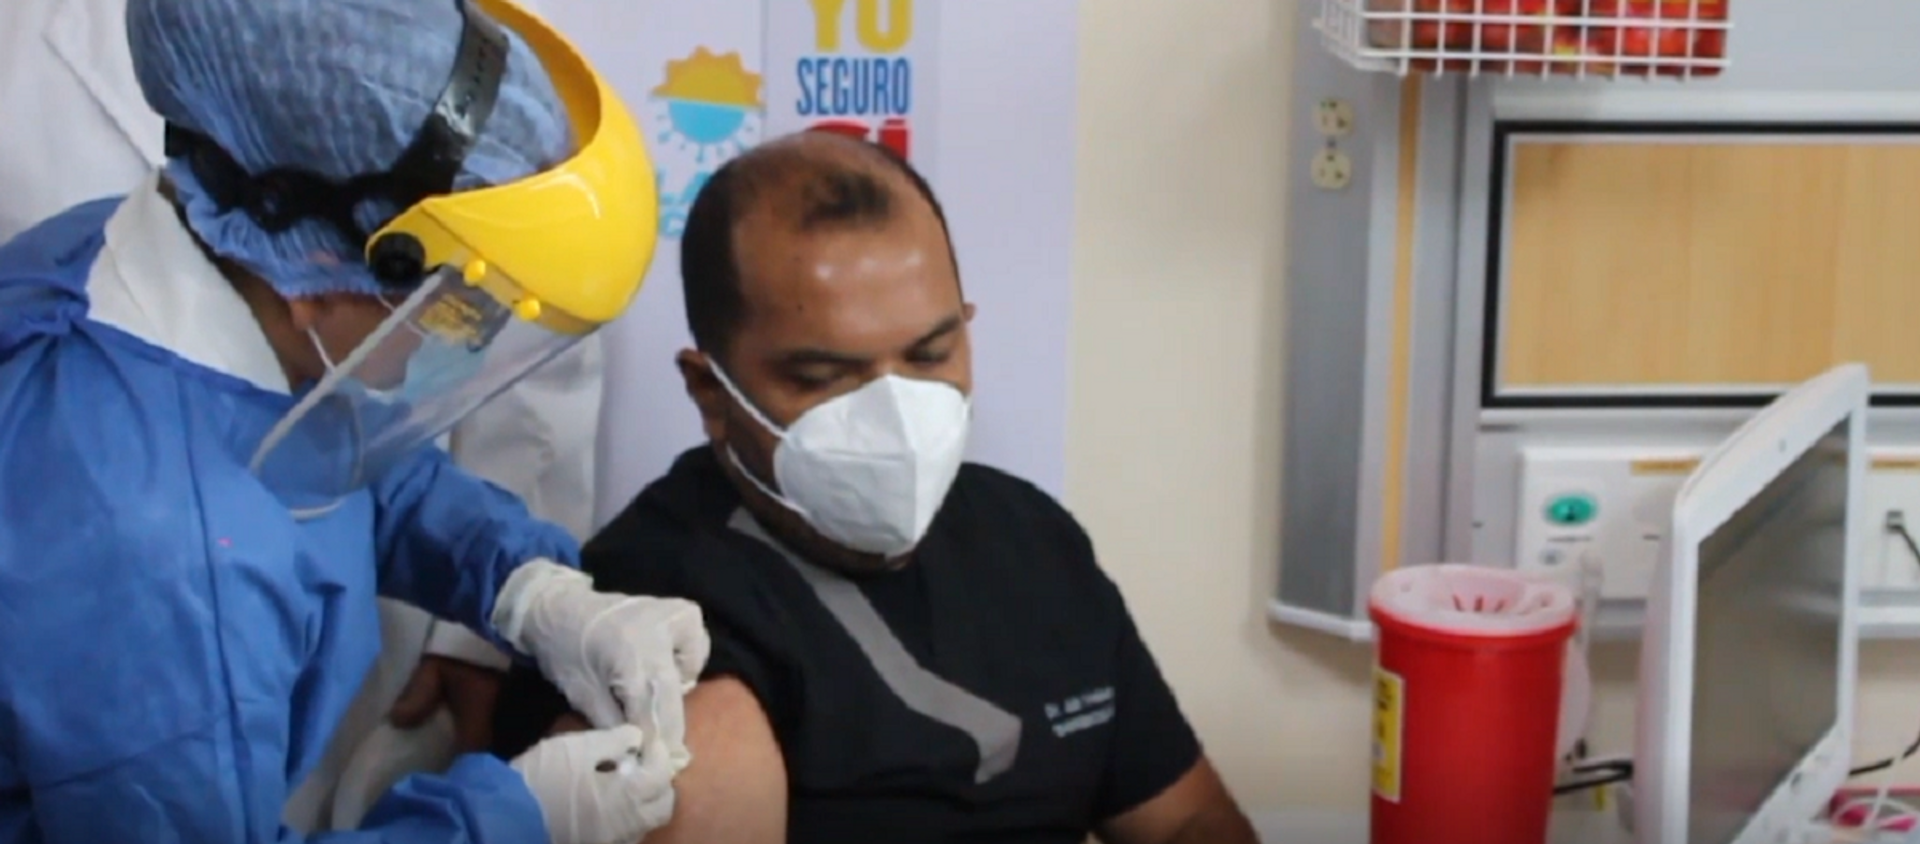  Trabajadores de la salud en Ecuador empiezan a recibir la vacuna de Pfizer - Sputnik Mundo, 1920, 22.01.2021